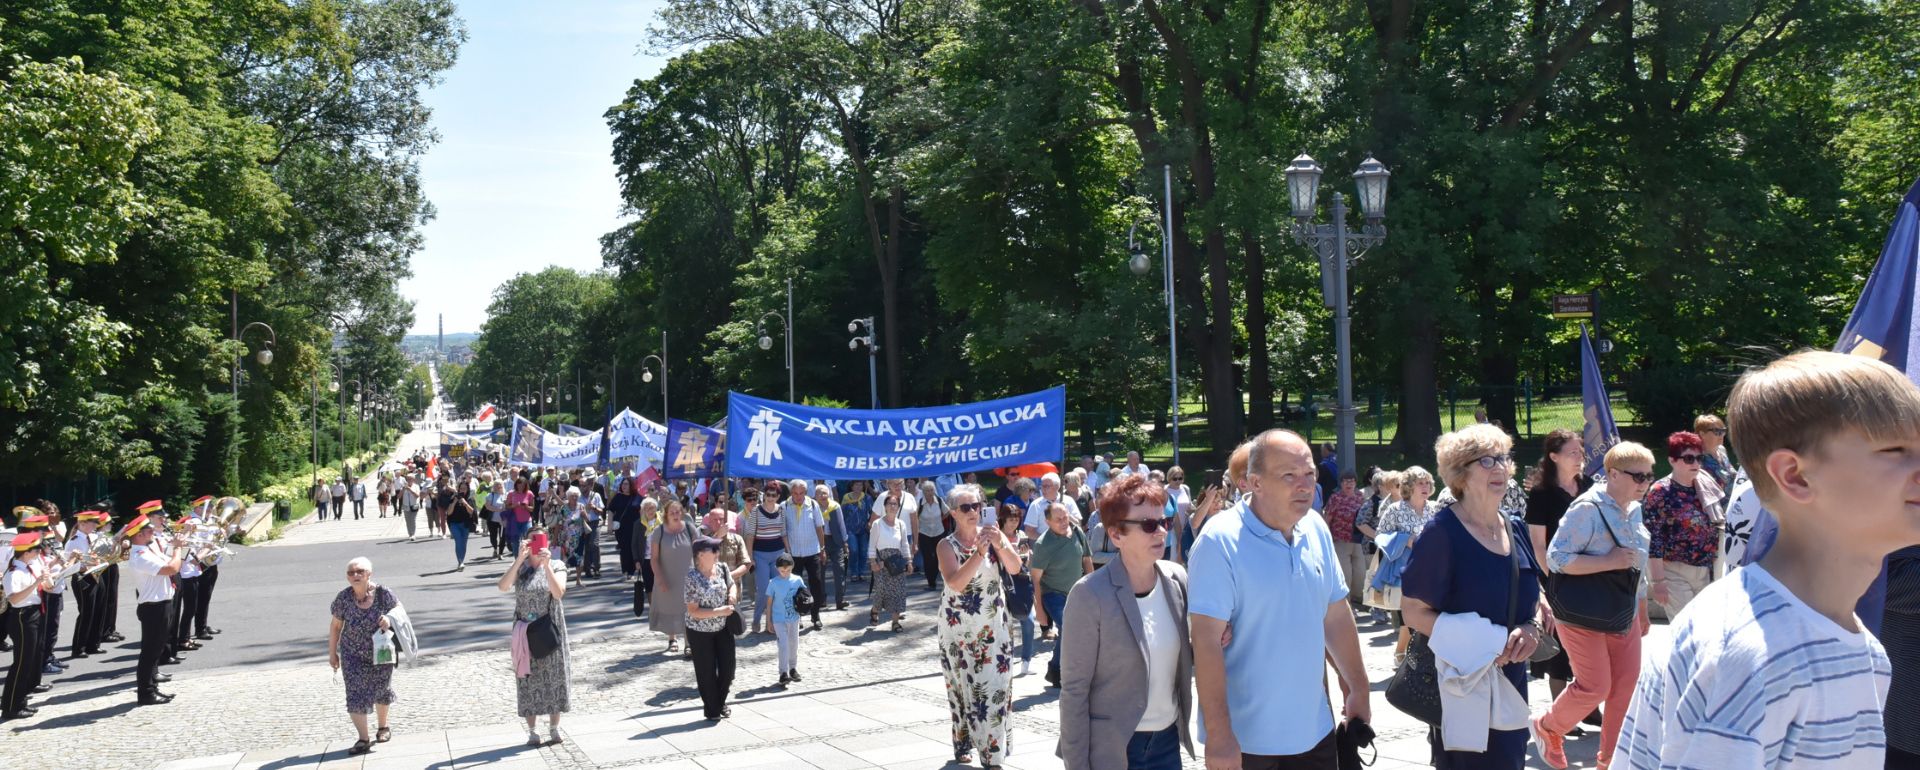 XXVIII National Pilgrimage of Catholic Action Poland to Jasna Góra